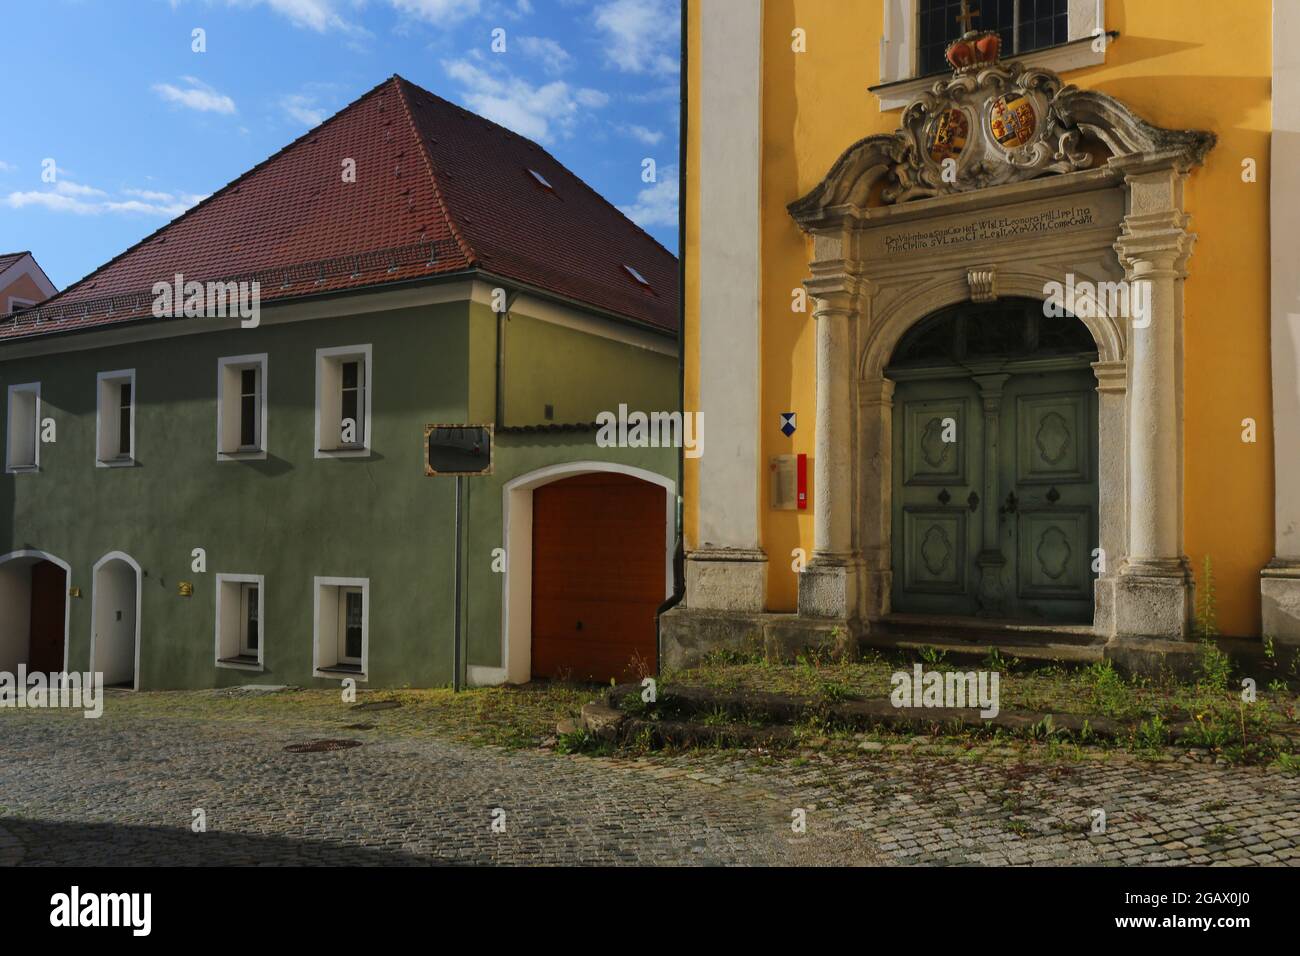 Altstadt oder Innenstadt mit historischen Kloster oder Kirche mit Eingangsportal dramatischen Wolken in Sulzbach Rosenberg, Amberg, Oberpfalz, Bayern! Foto de stock